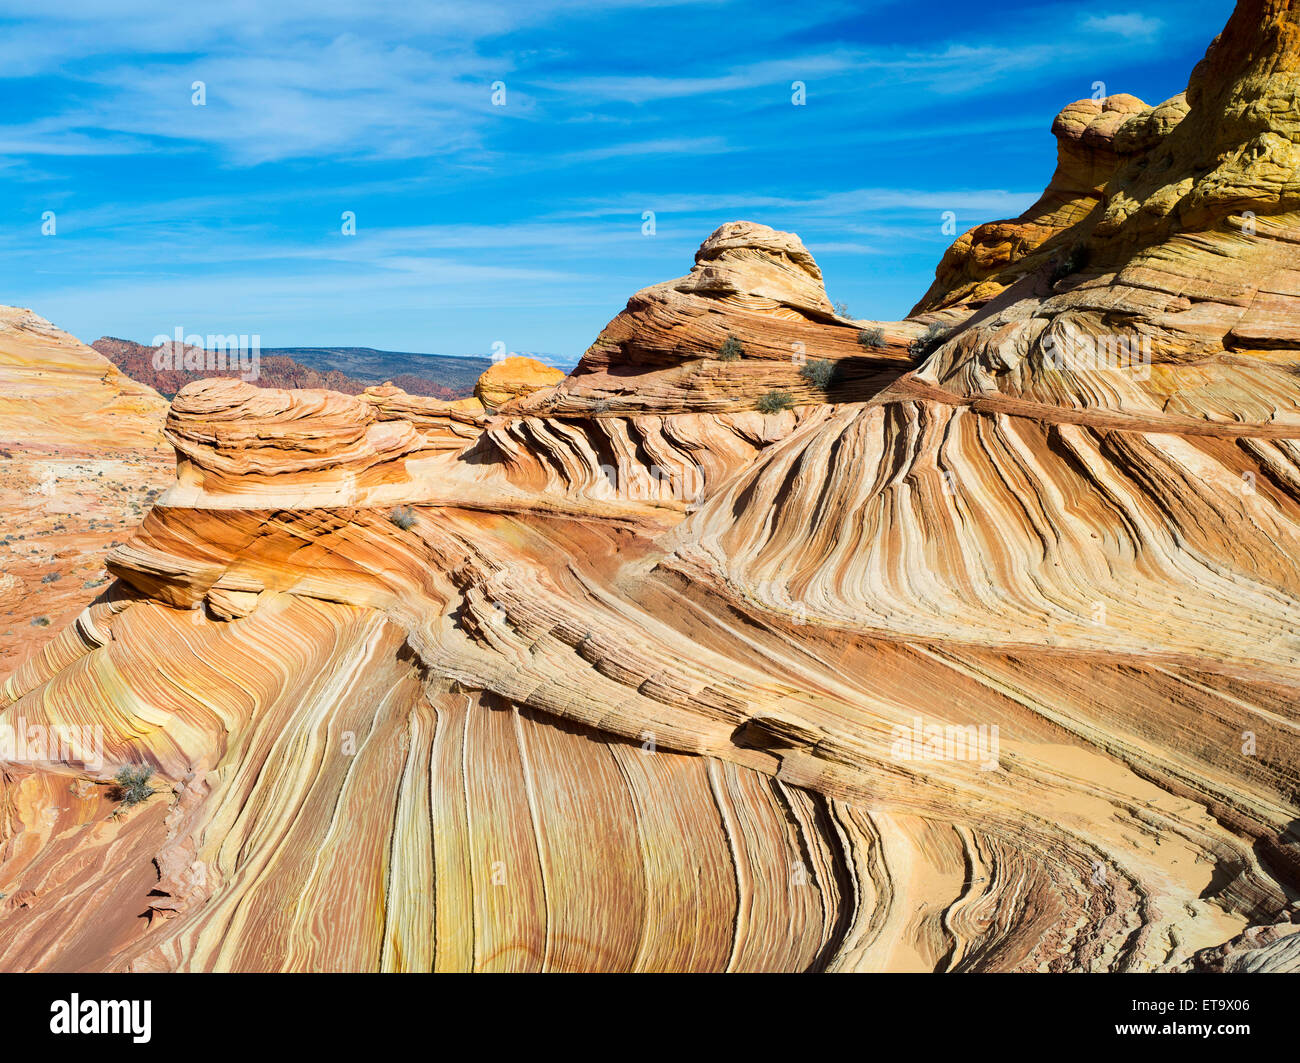 Szene aus die schöne geologische Formation aus bunten gefalteten Sandstein, bekannt als "The Wave". North Coyote Buttes, Vermillion Stockfoto